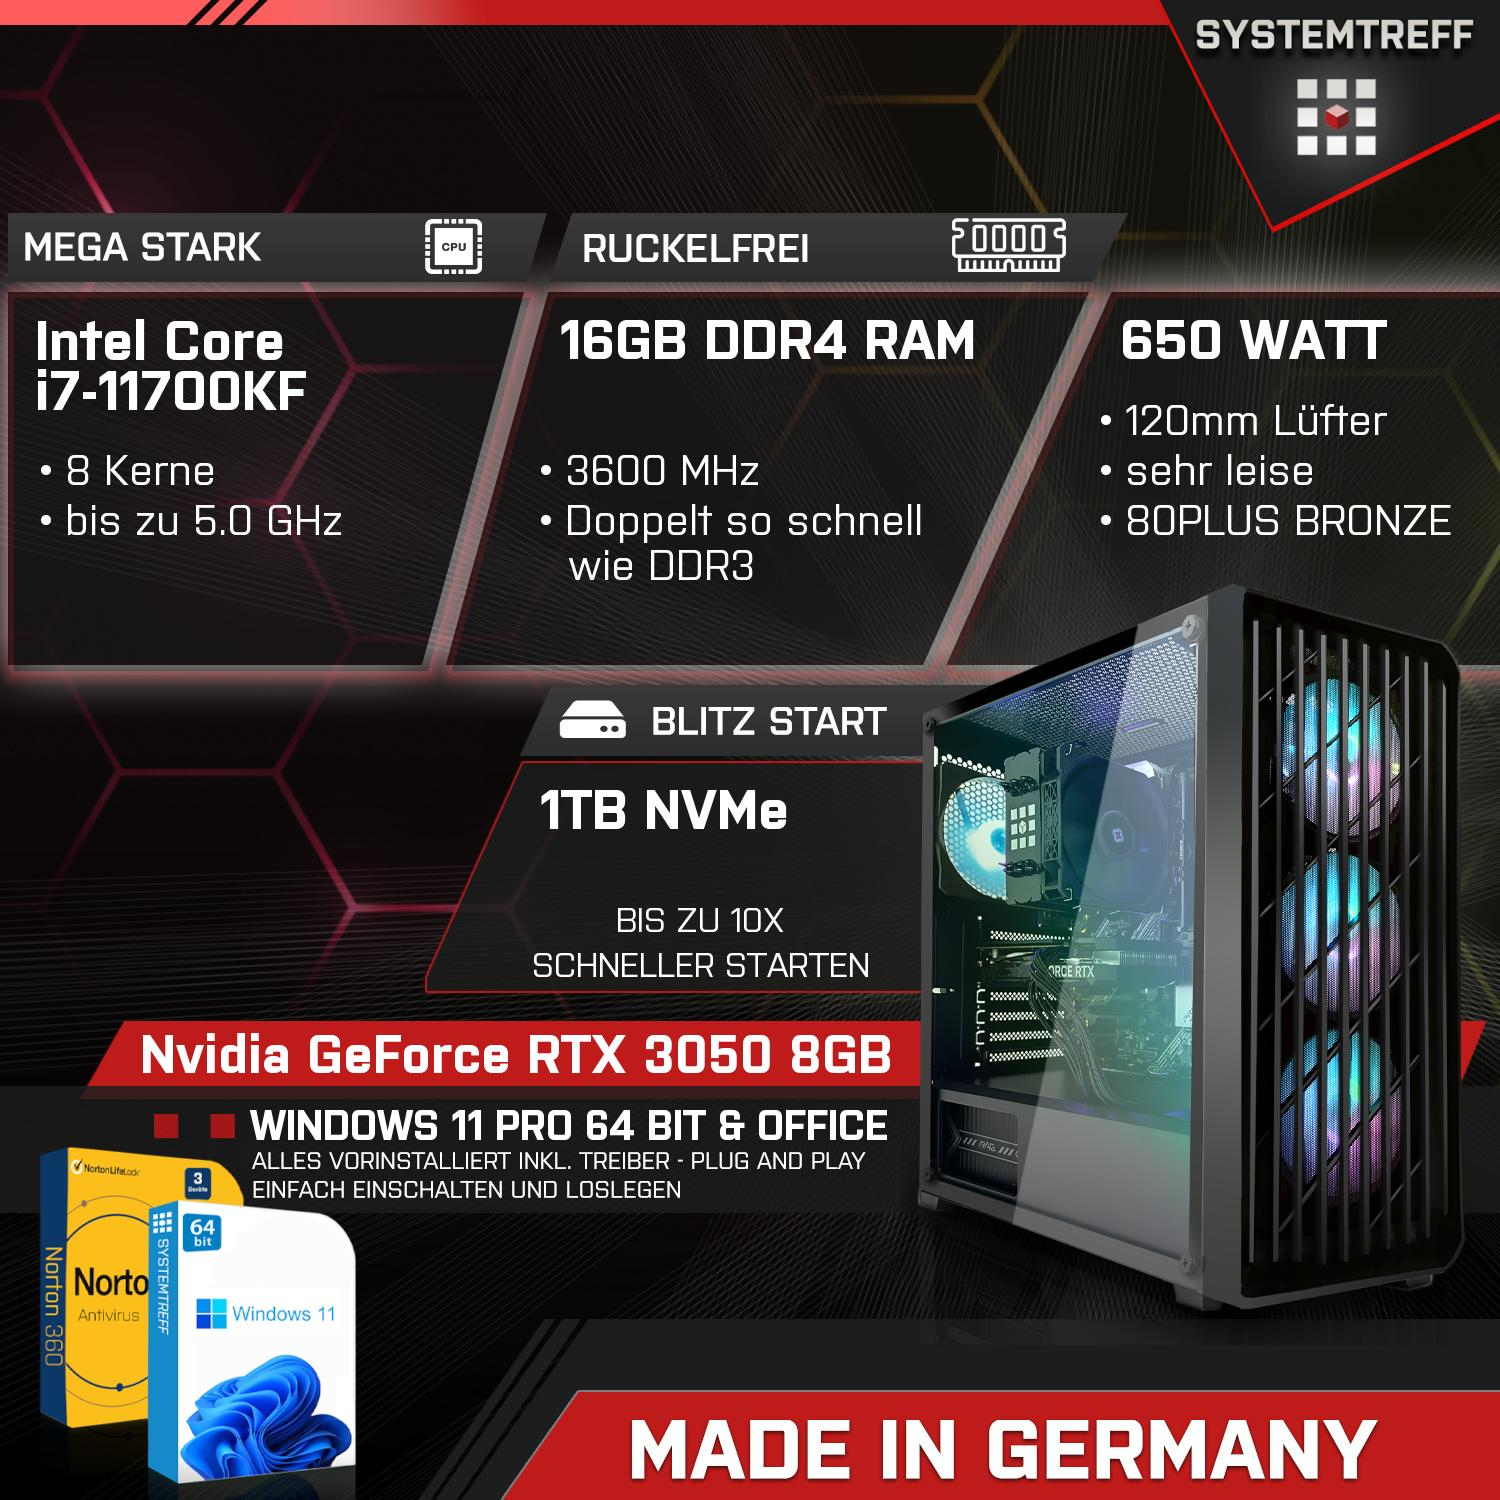 SYSTEMTREFF Gaming Komplett Intel Core PC 8 GB Komplett mit 16 i7-11700KF, i7-11700KF RAM, mSSD, Prozessor, GB GB 1000